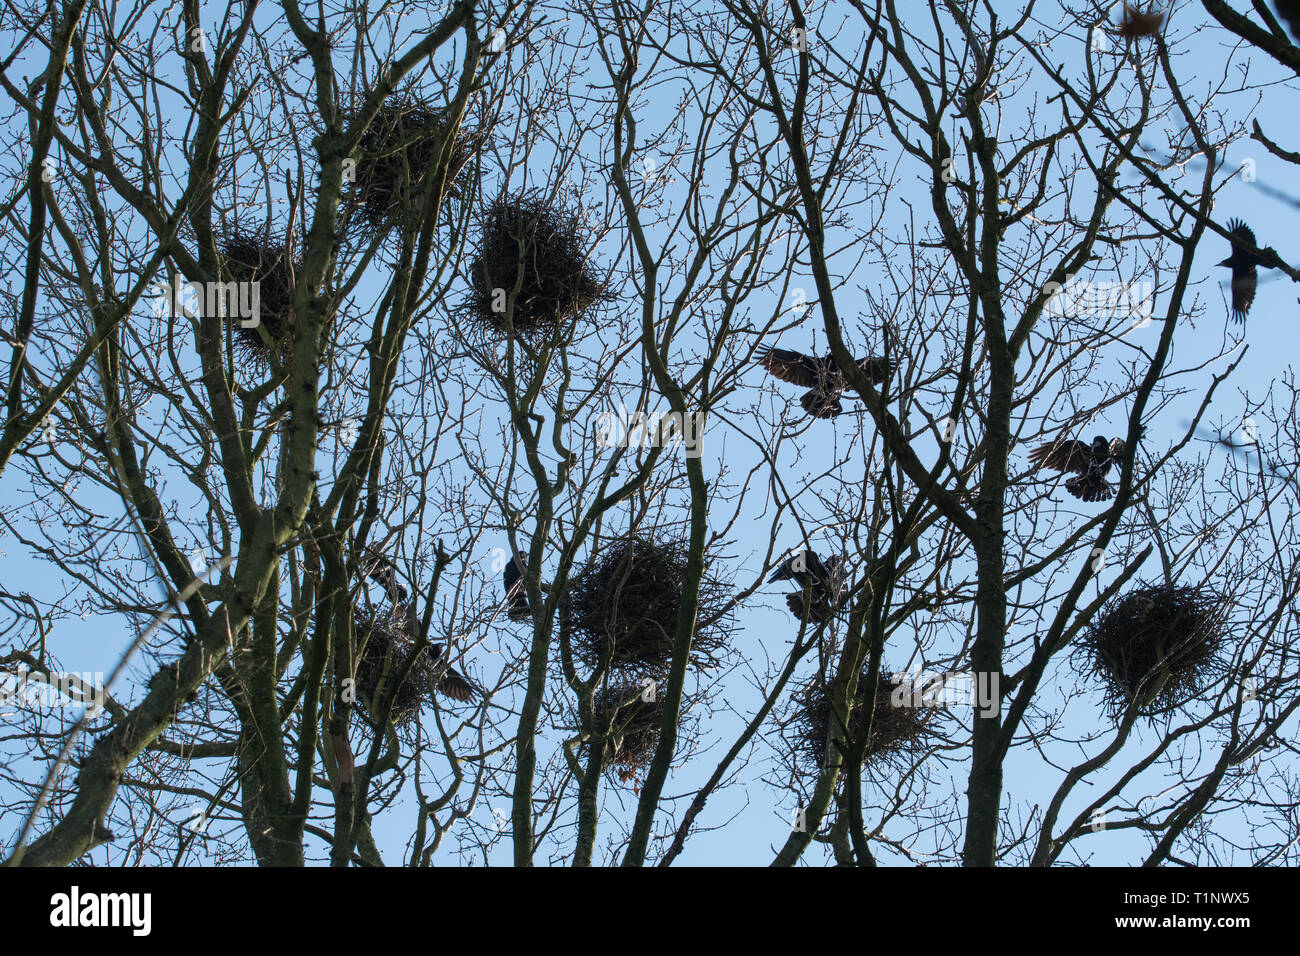 Une rookerie au sommet des arbres au printemps avec les corbeaux freux (corvus frugilegus) volant autour de leurs nids. Colonie d'oiseaux, au Royaume-Uni. Banque D'Images